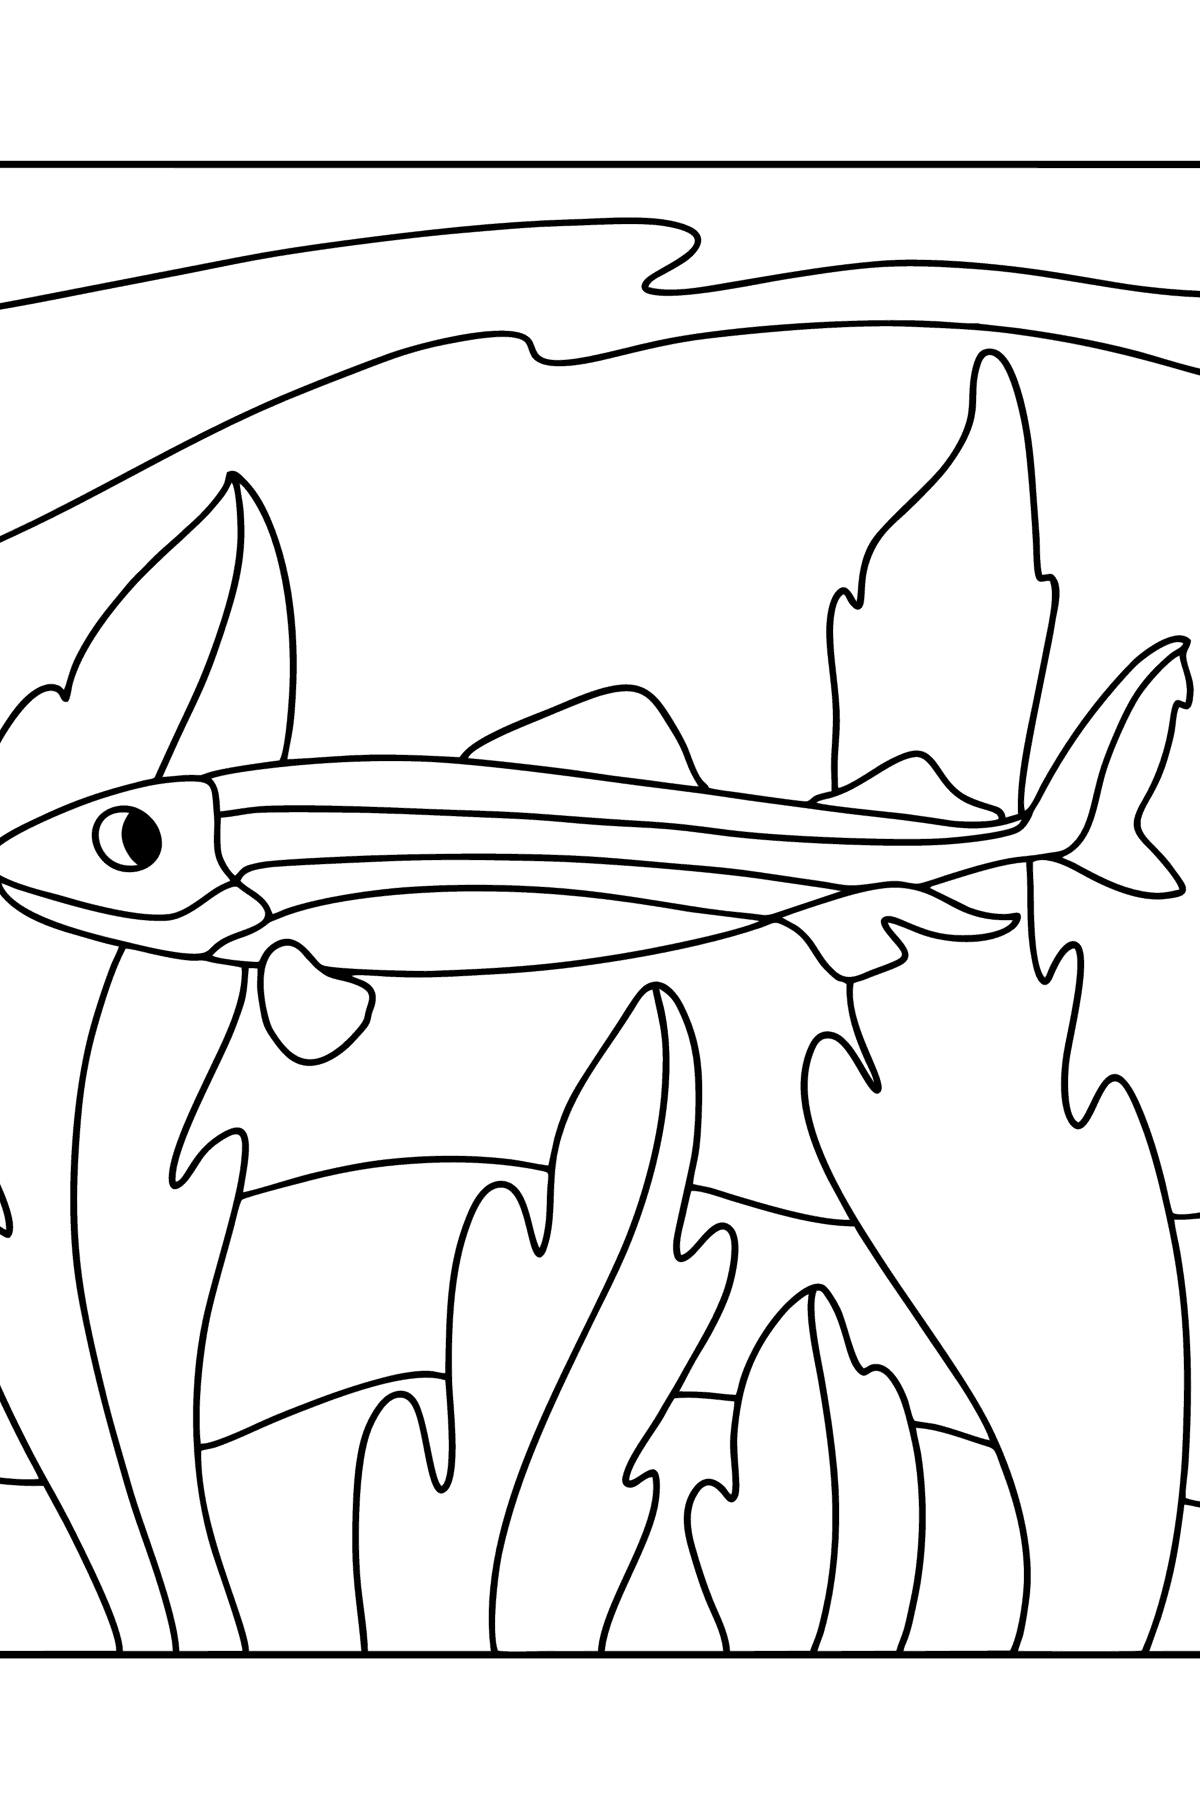 Dibujo de Tiburón cocodrilo para colorear - Dibujos para Colorear para Niños